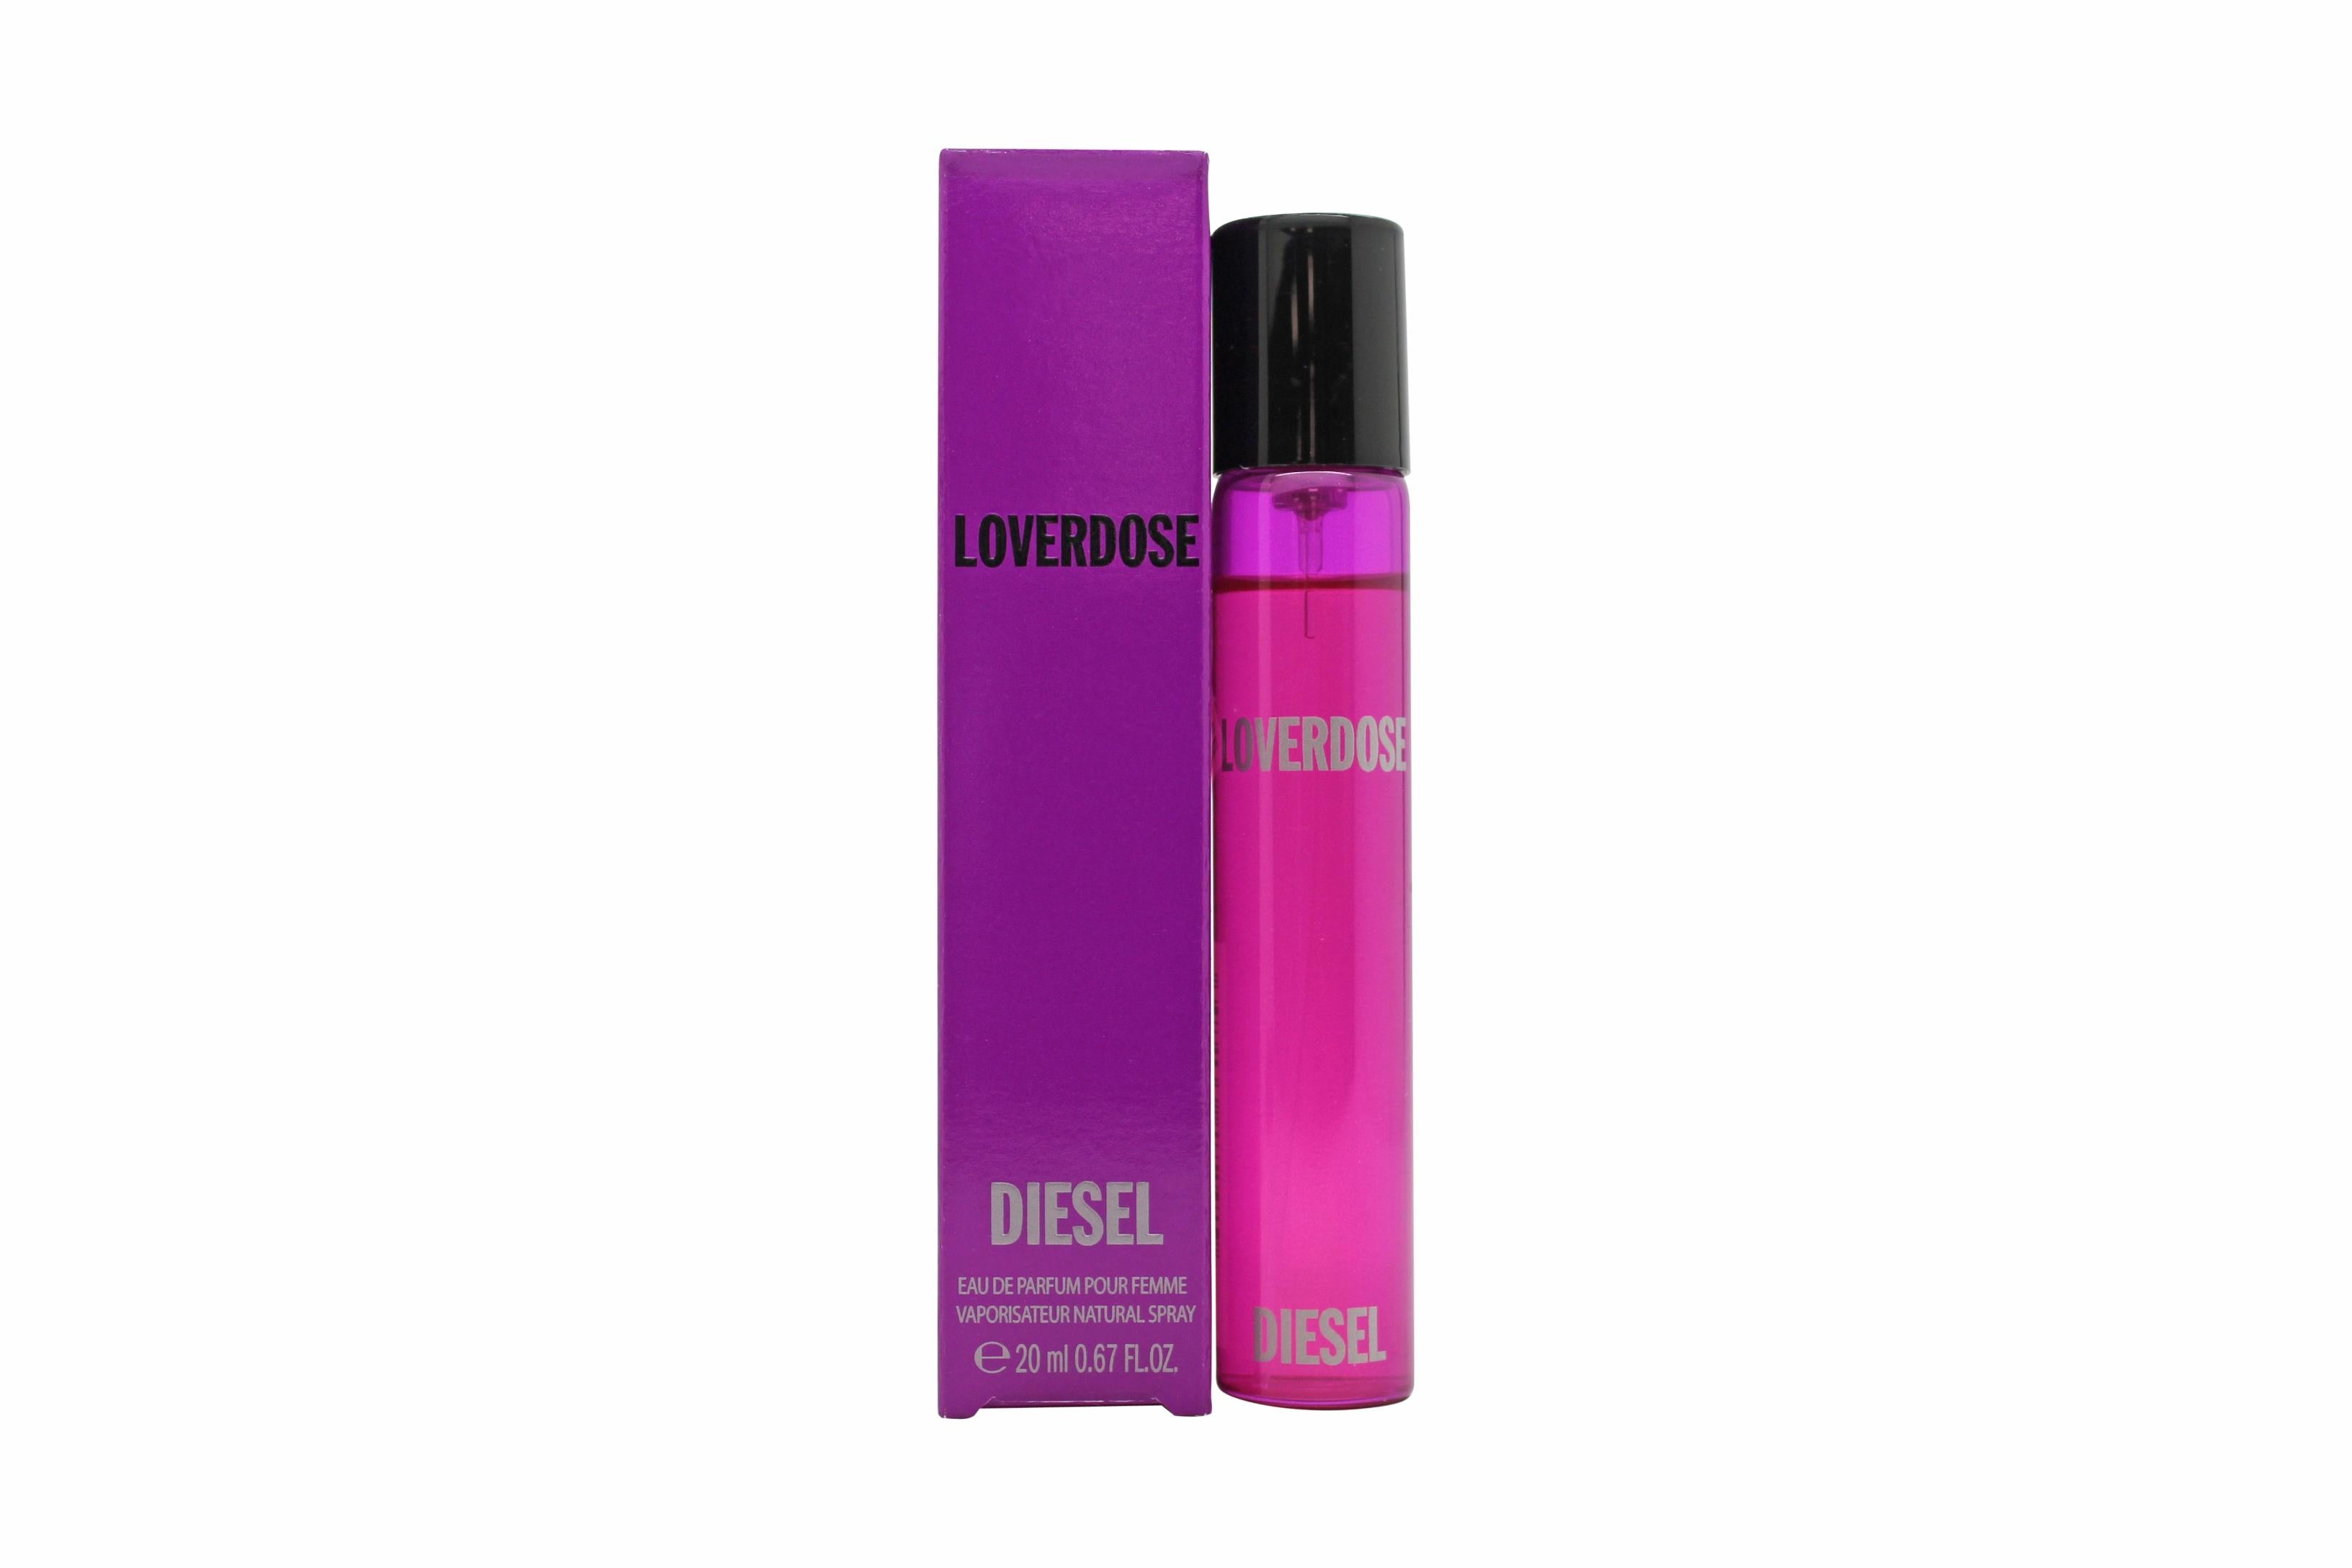 View Diesel Loverdose Eau de Parfum 20ml Spray information